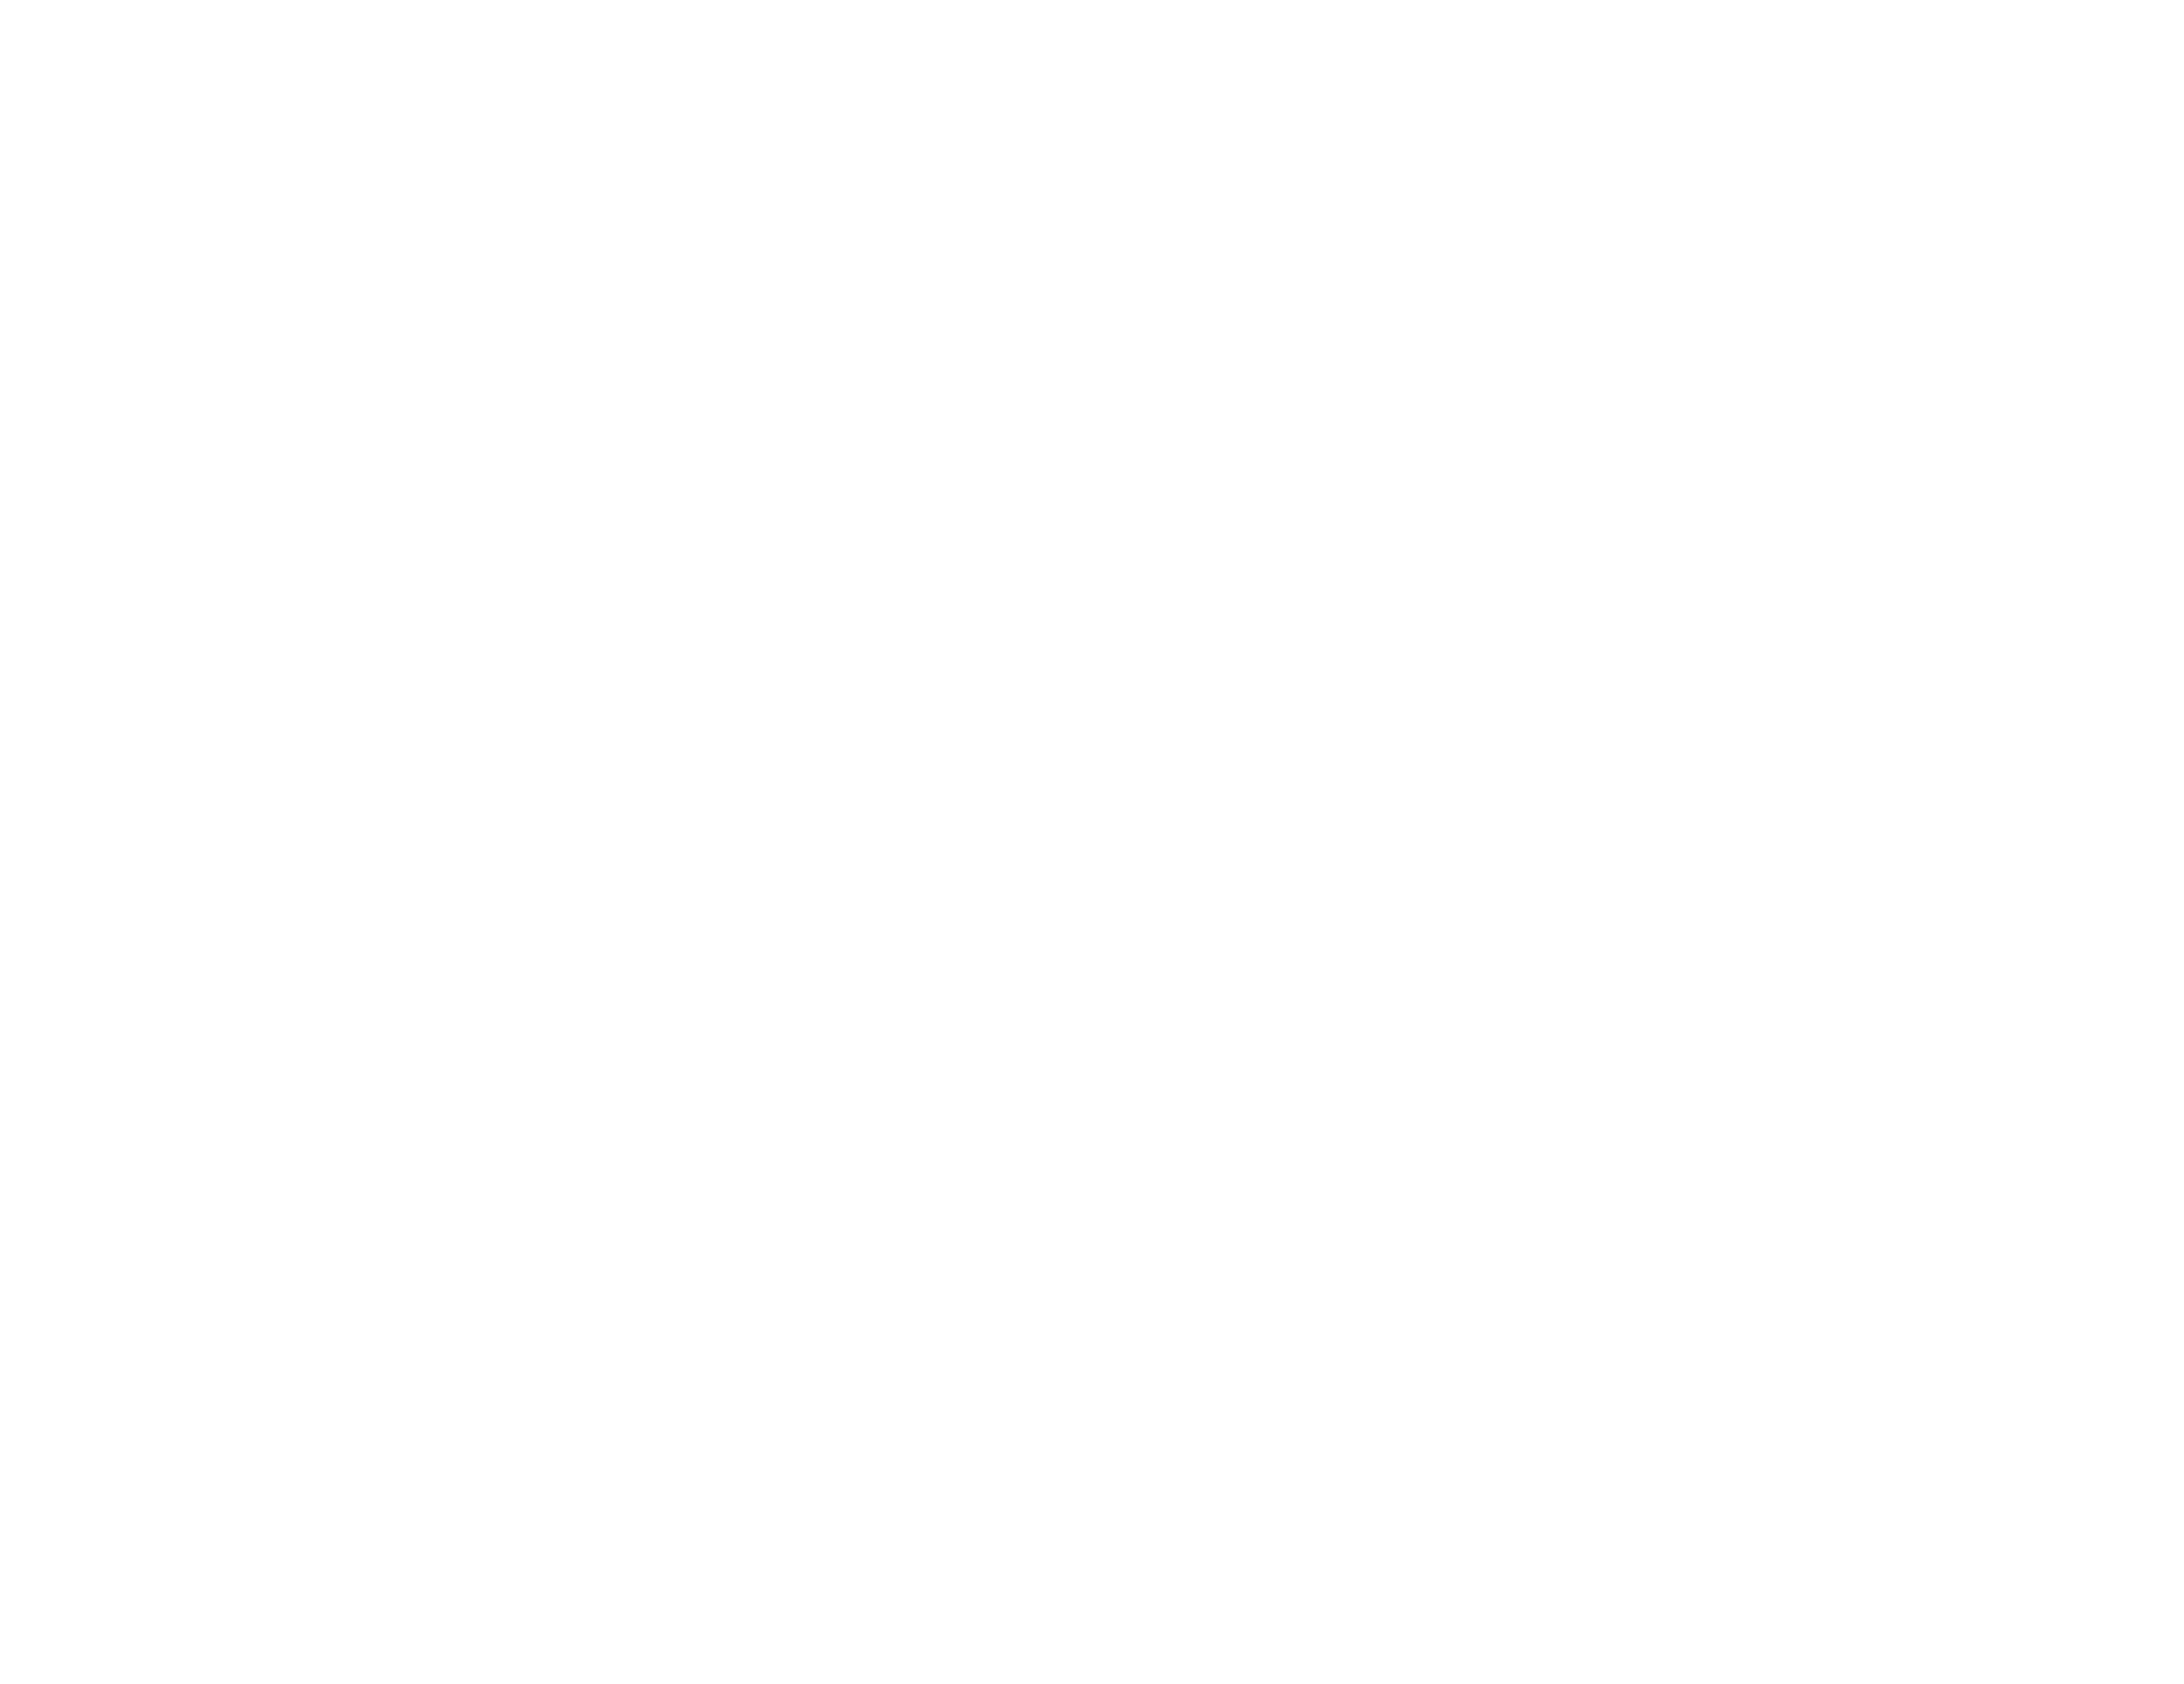 World Forum The Hague gaat lokaal CO2 compenseren met het Klimaatfonds